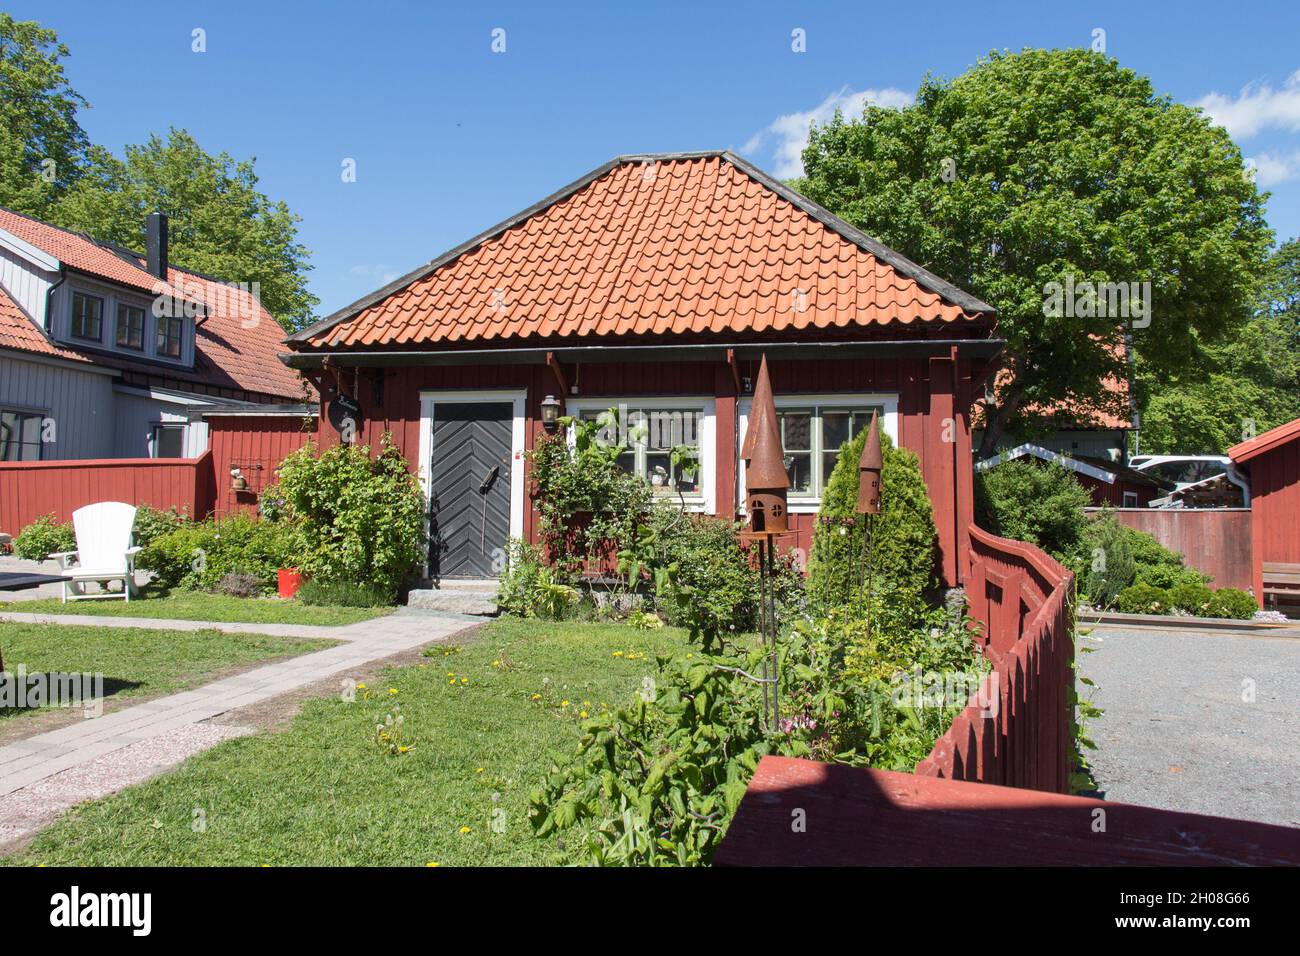 Svezia, Sigtuna - Maggio 31 2019: La vista di una casa tipica in una giornata di sole il 31 2019 maggio a Sigtuna, Svezia. Foto Stock